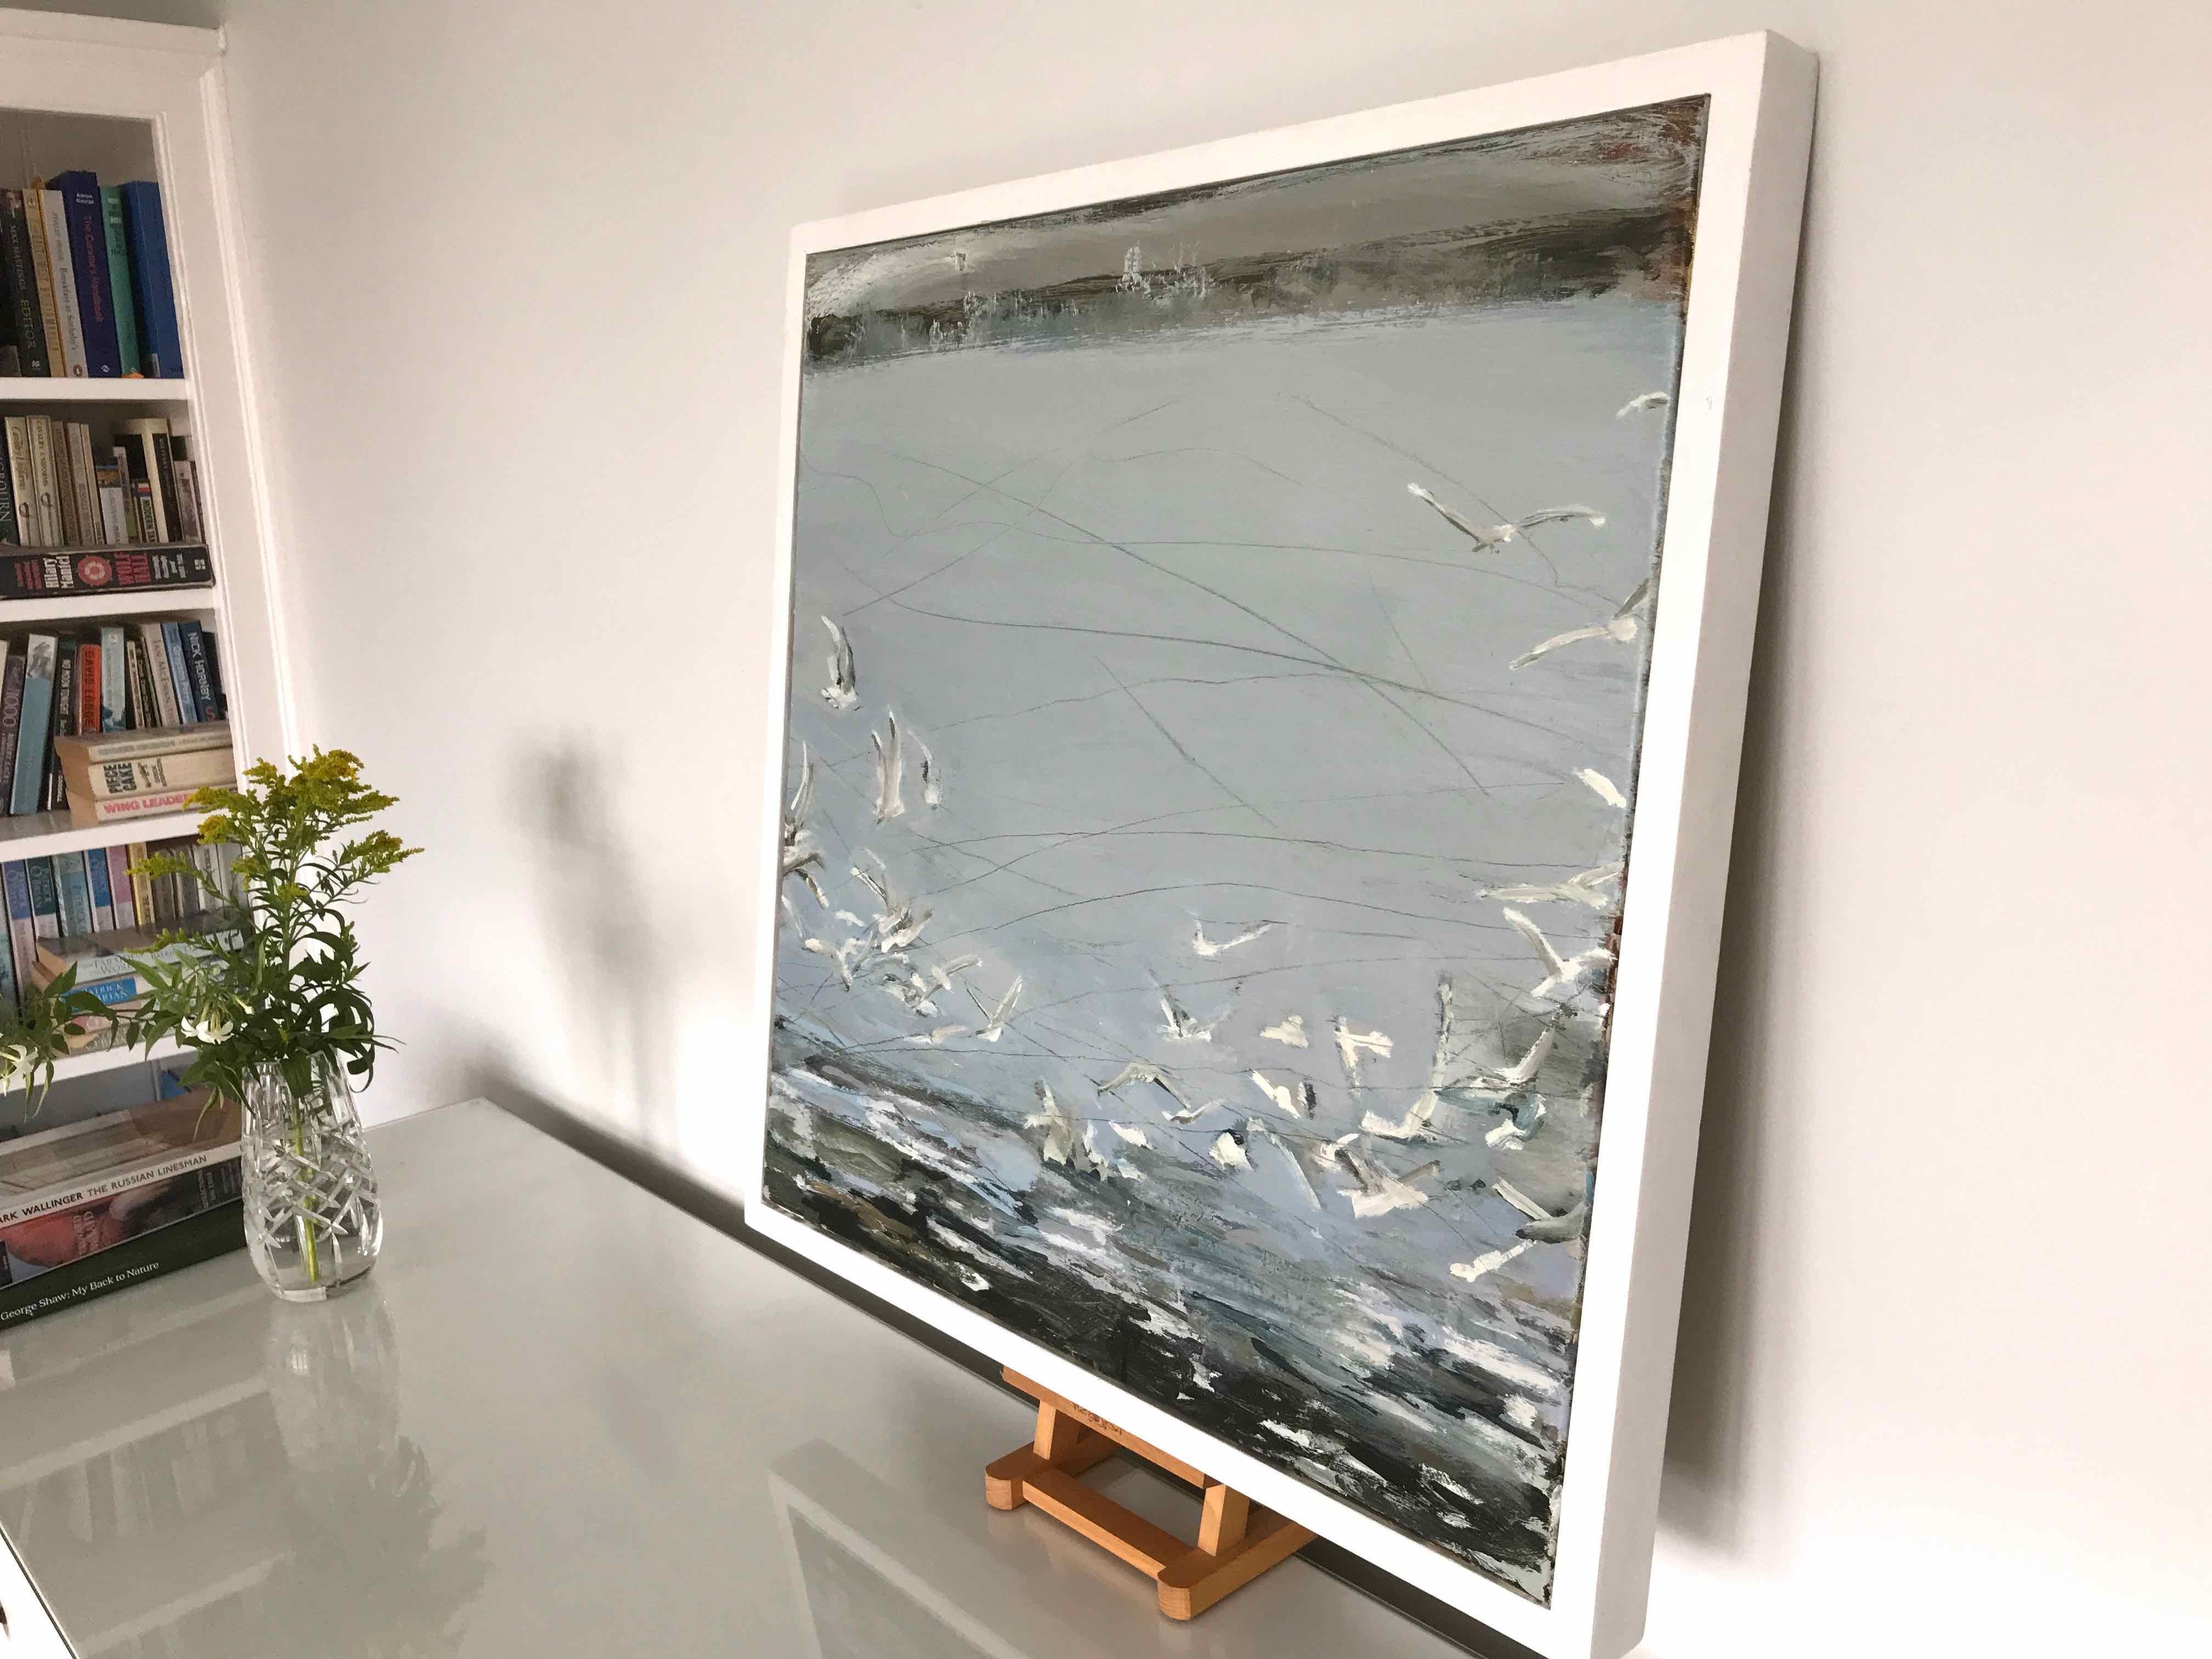 Einlaufende Flut (Heringsmöwen, Severn-Mündung) 1, 2017 von Sara Dudman RWA

Sara malt mit sehr gestischen Zeichen, und dieses Bild ist Teil ihres neuen Werks, das die faszinierenden Interaktionen und Beziehungen zwischen der Natur in der